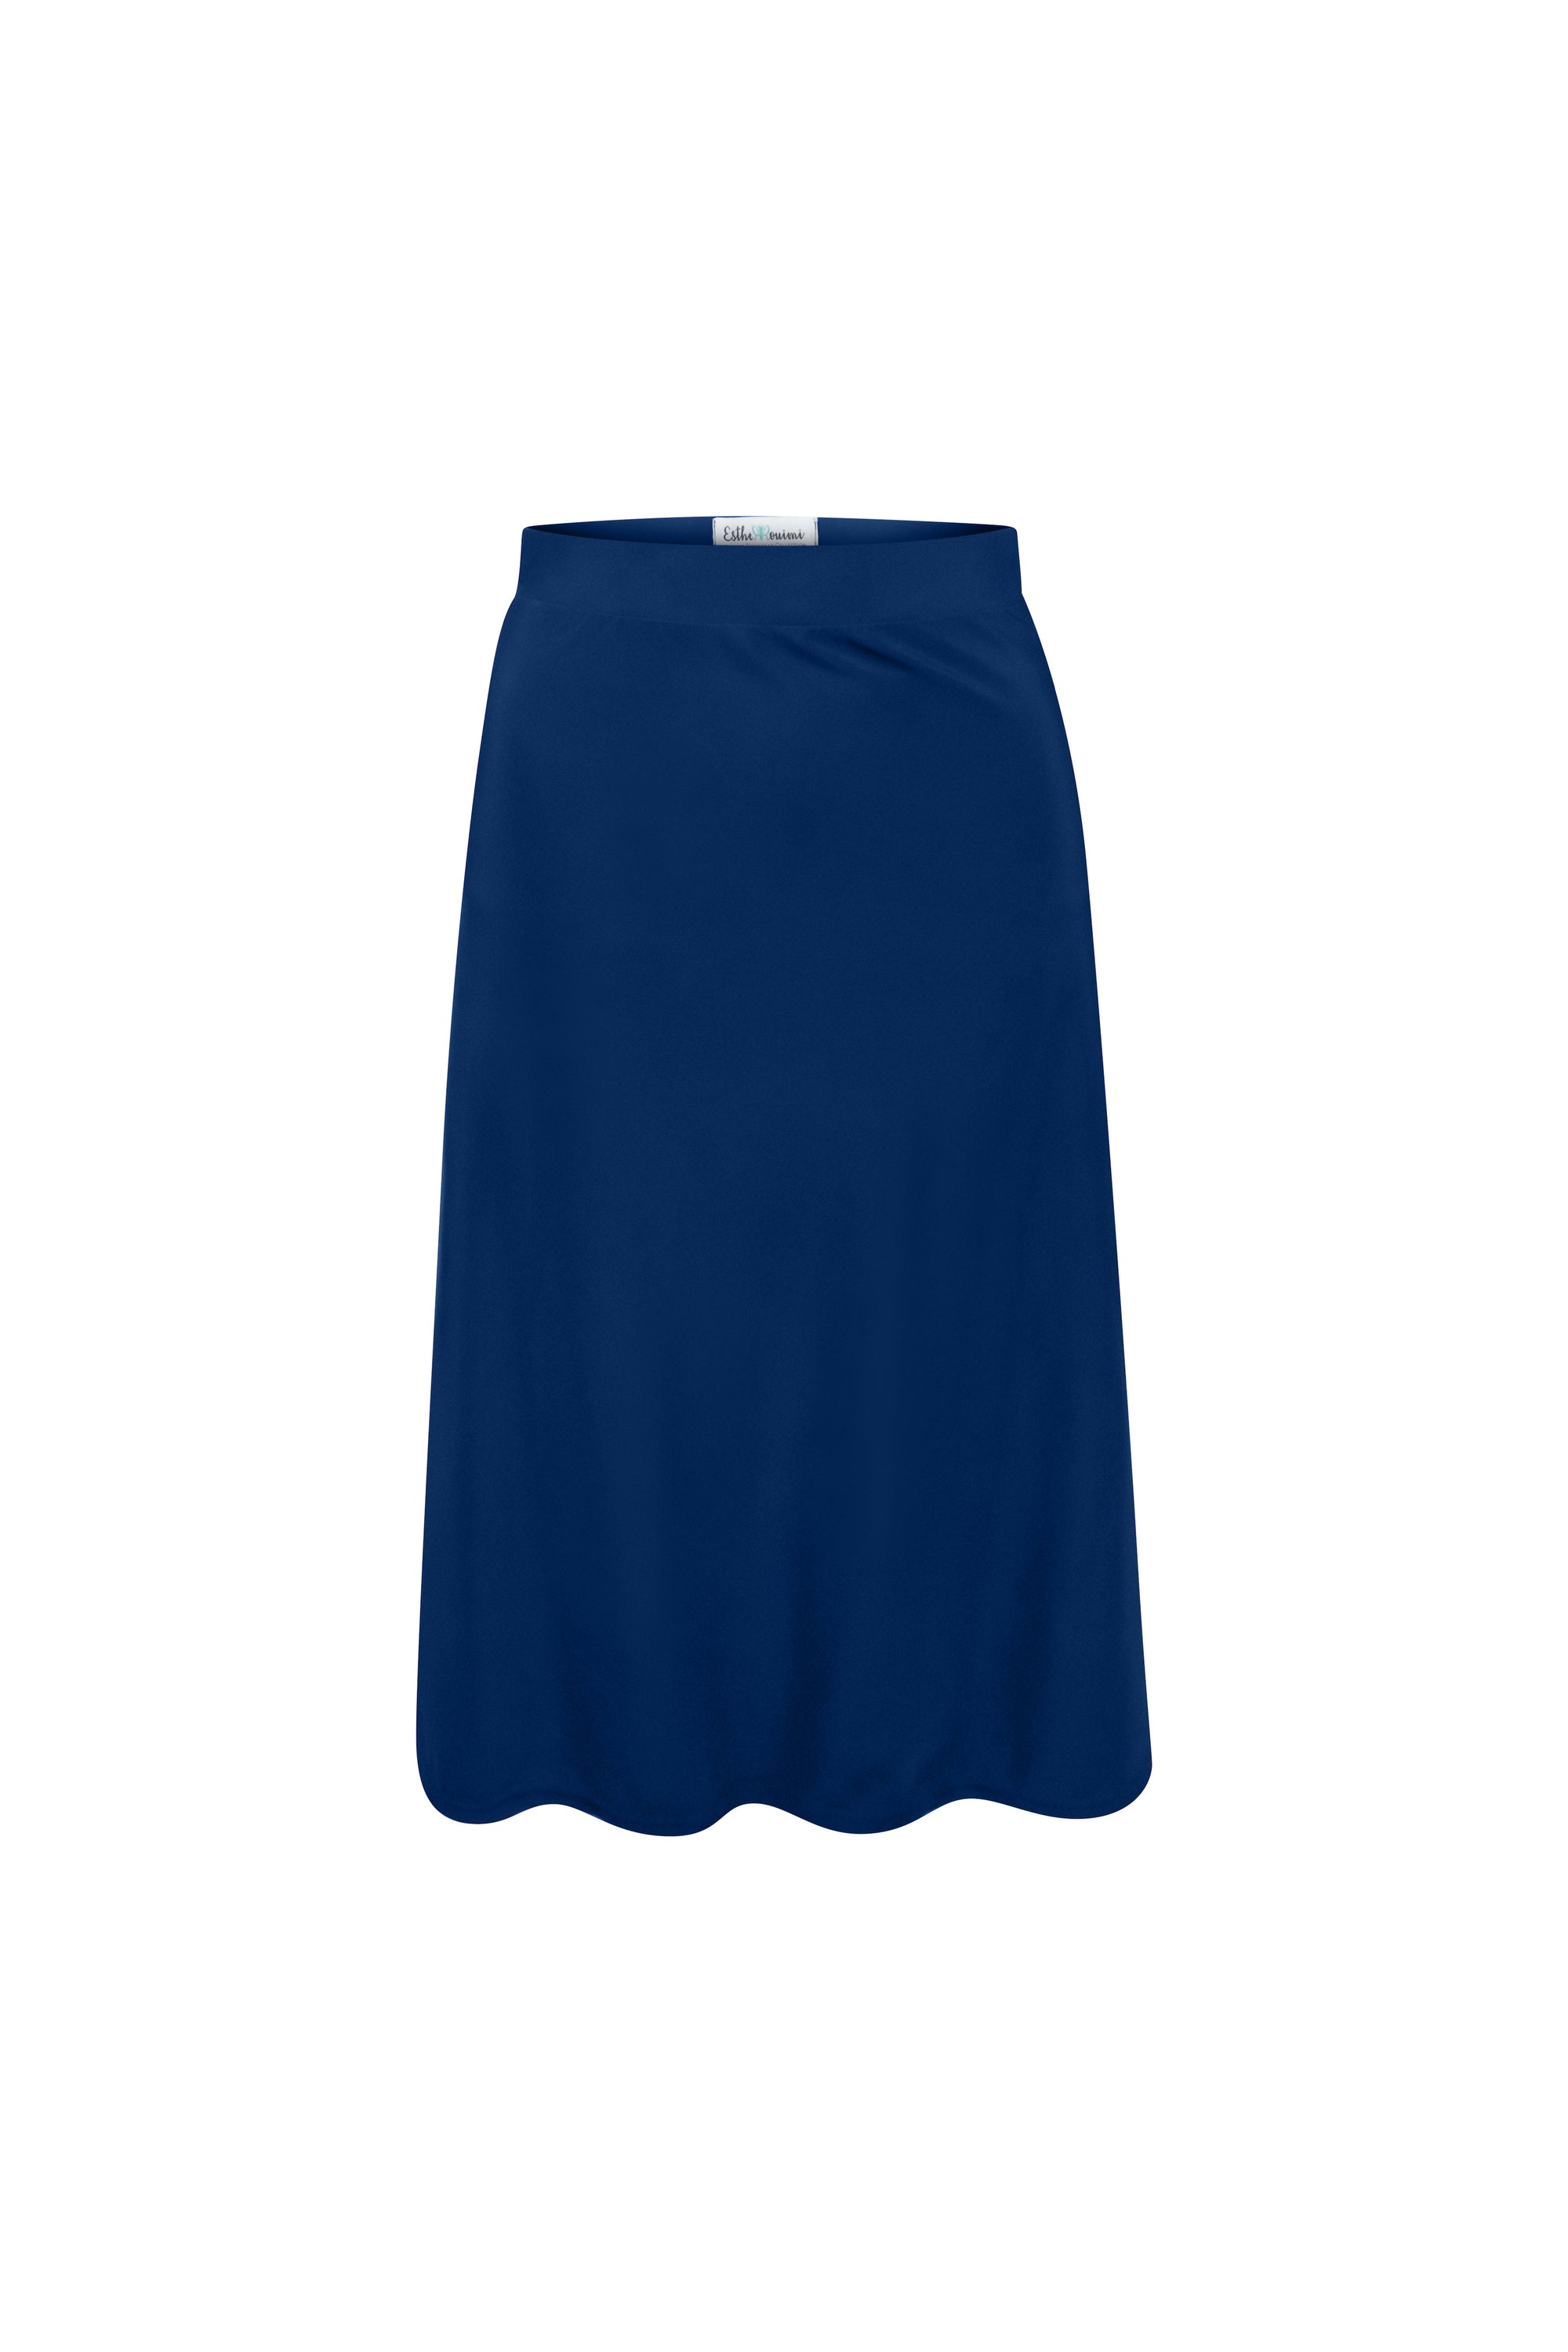 Ocala A-Line Skirt